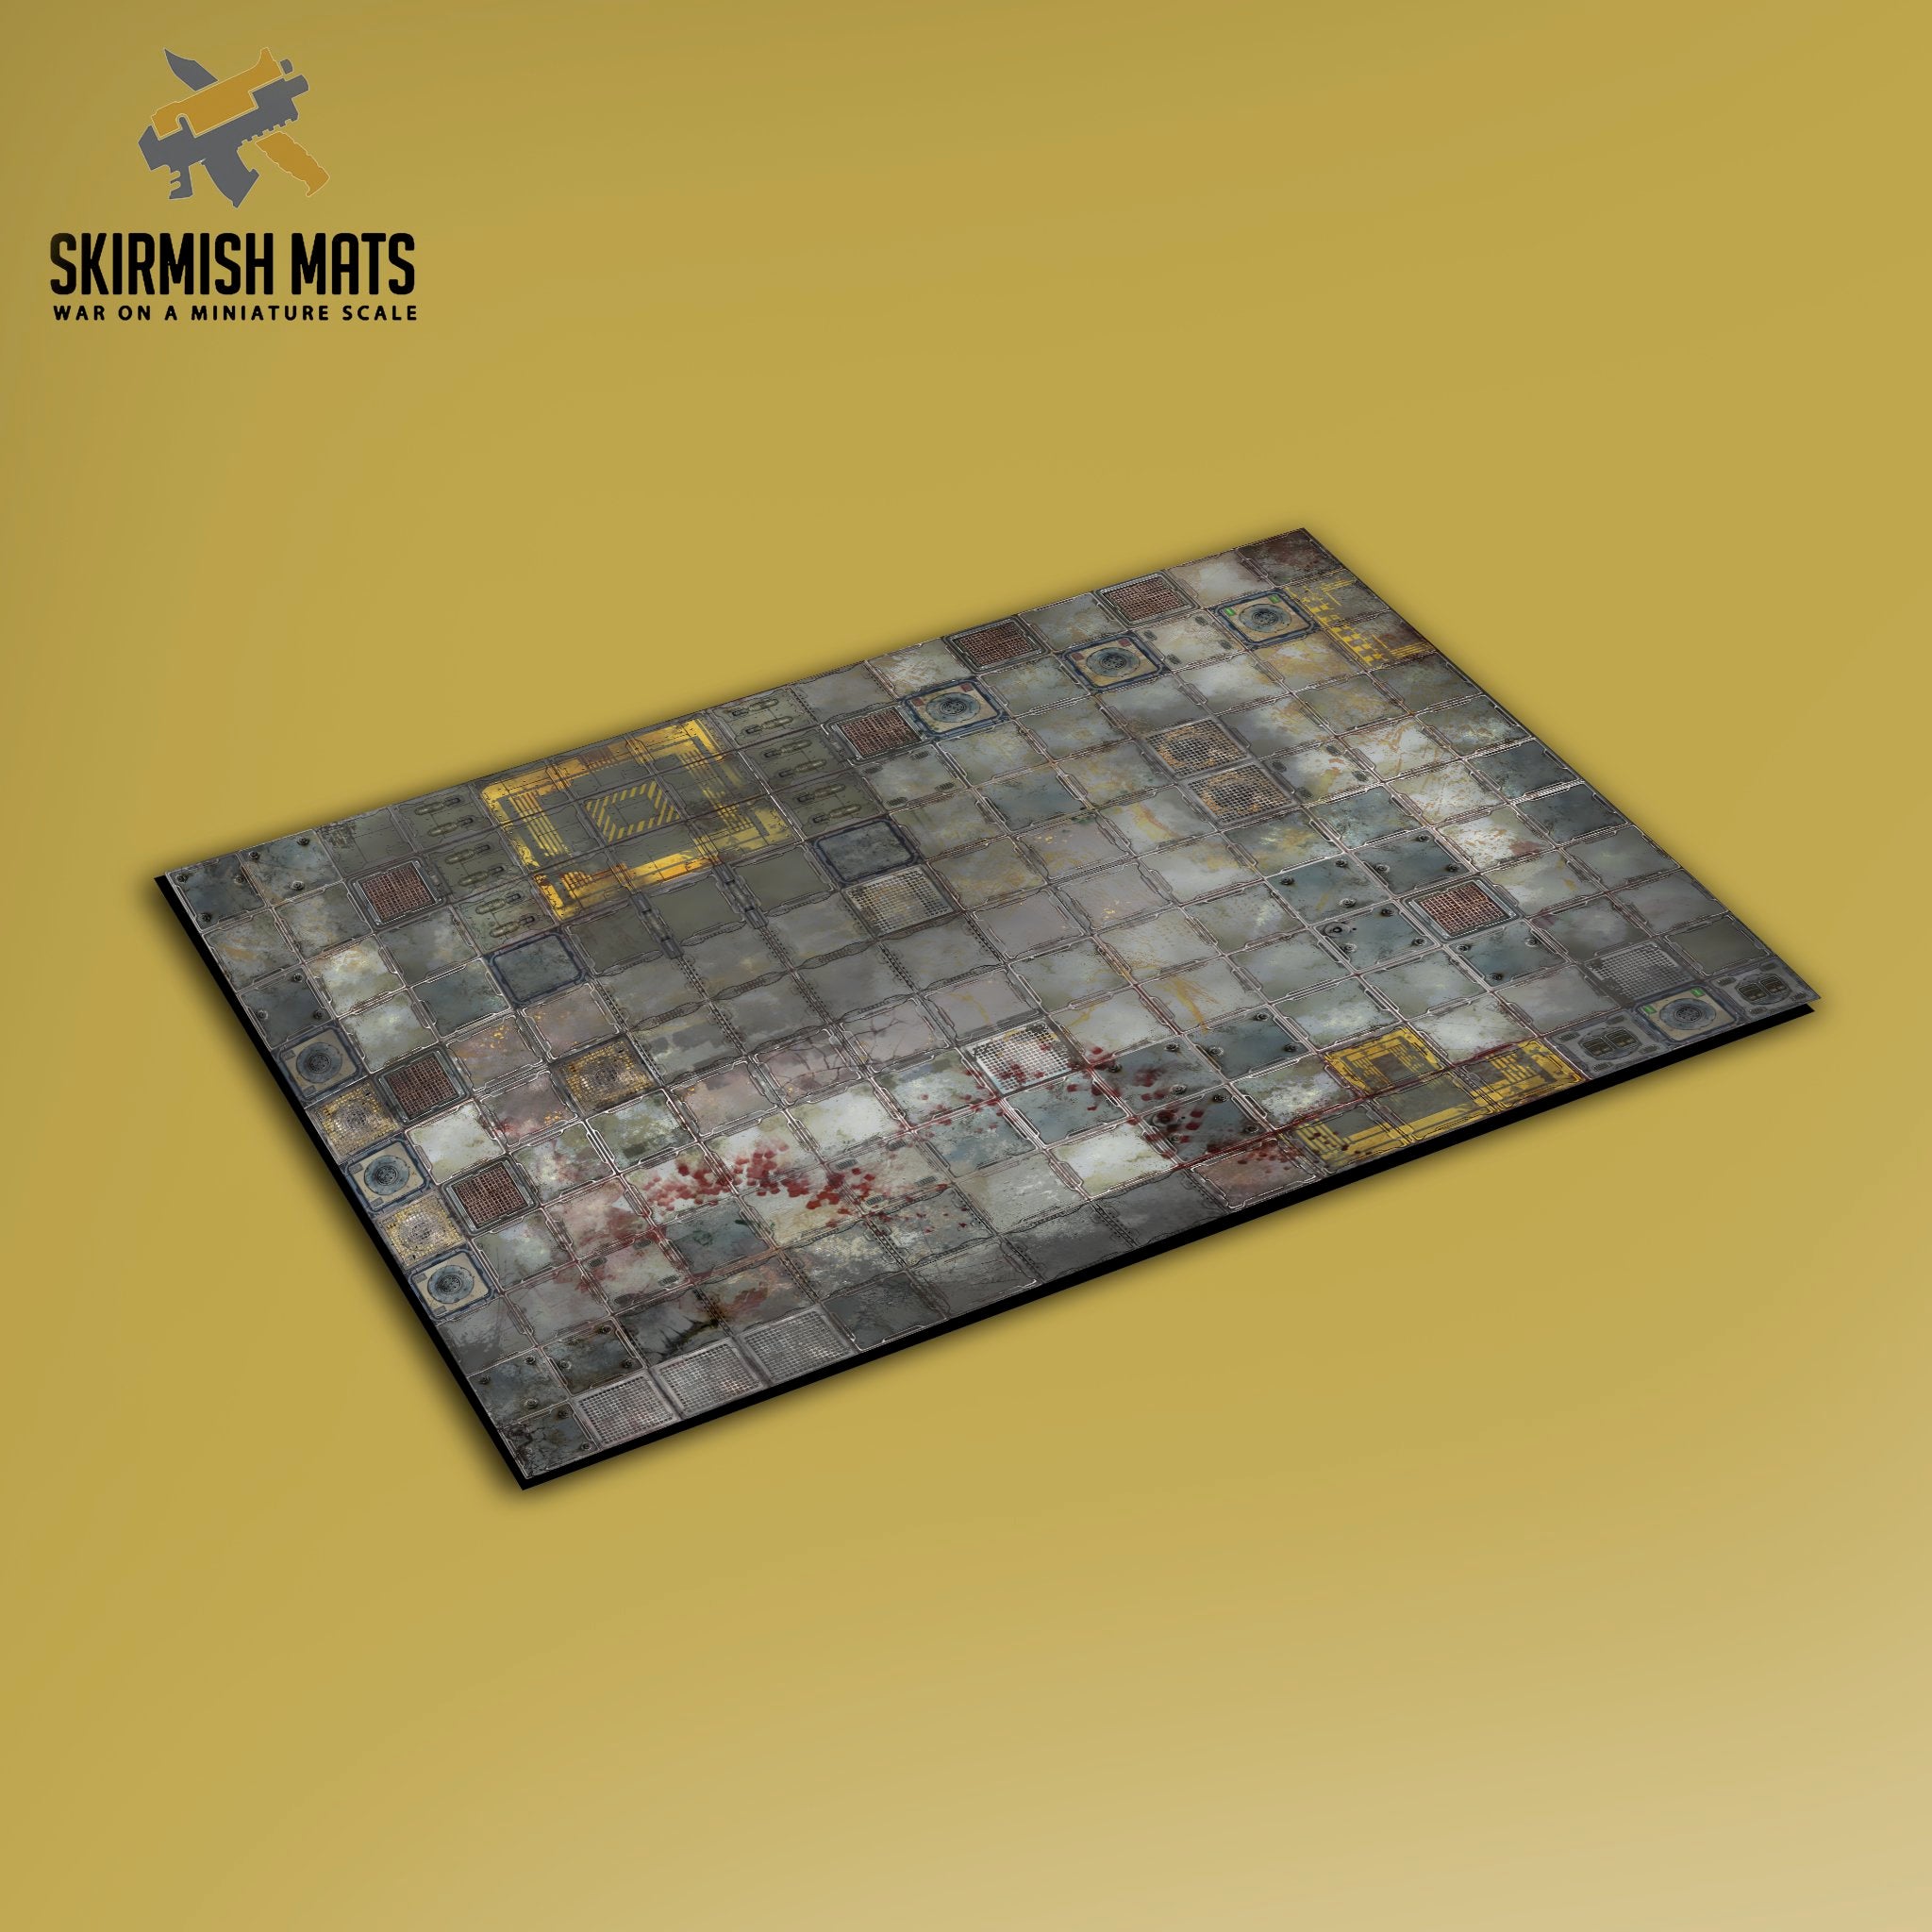 36x36" (3x3) battle mats for miniature wargaming